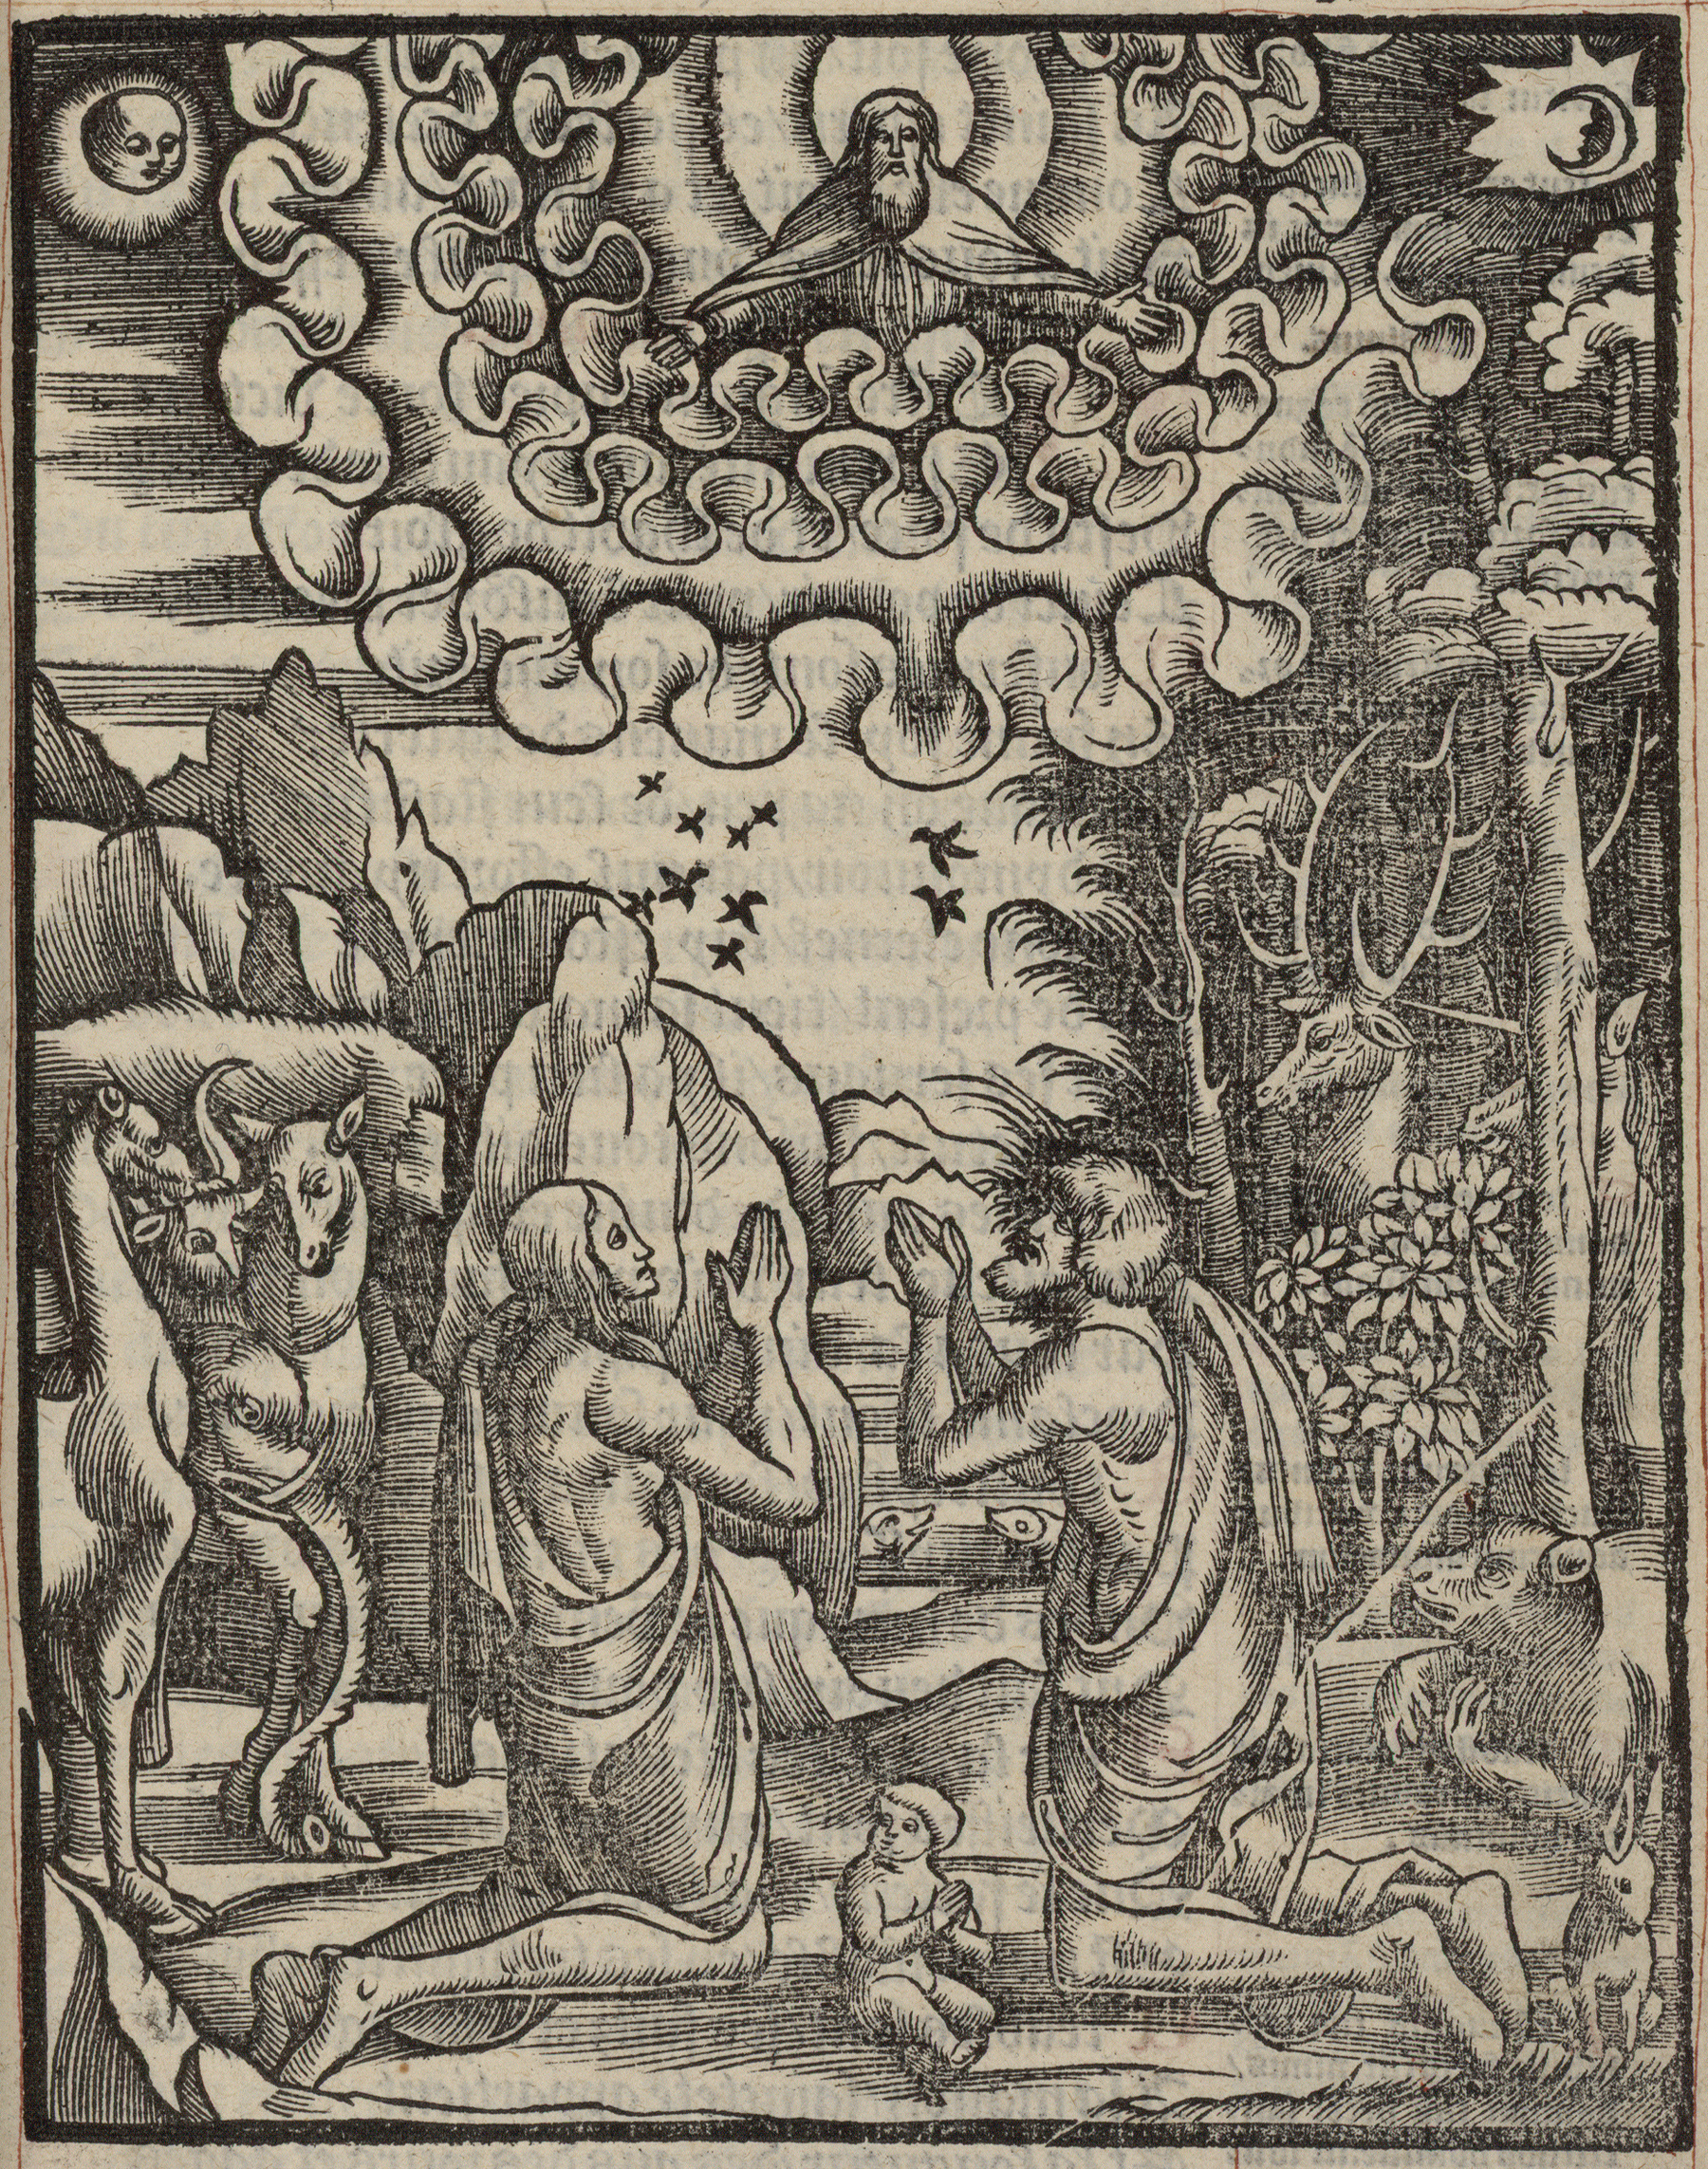 Contenu du Adam et Eve (?) prient à genoux entourés d'animaux, de lapins et d'un enfant